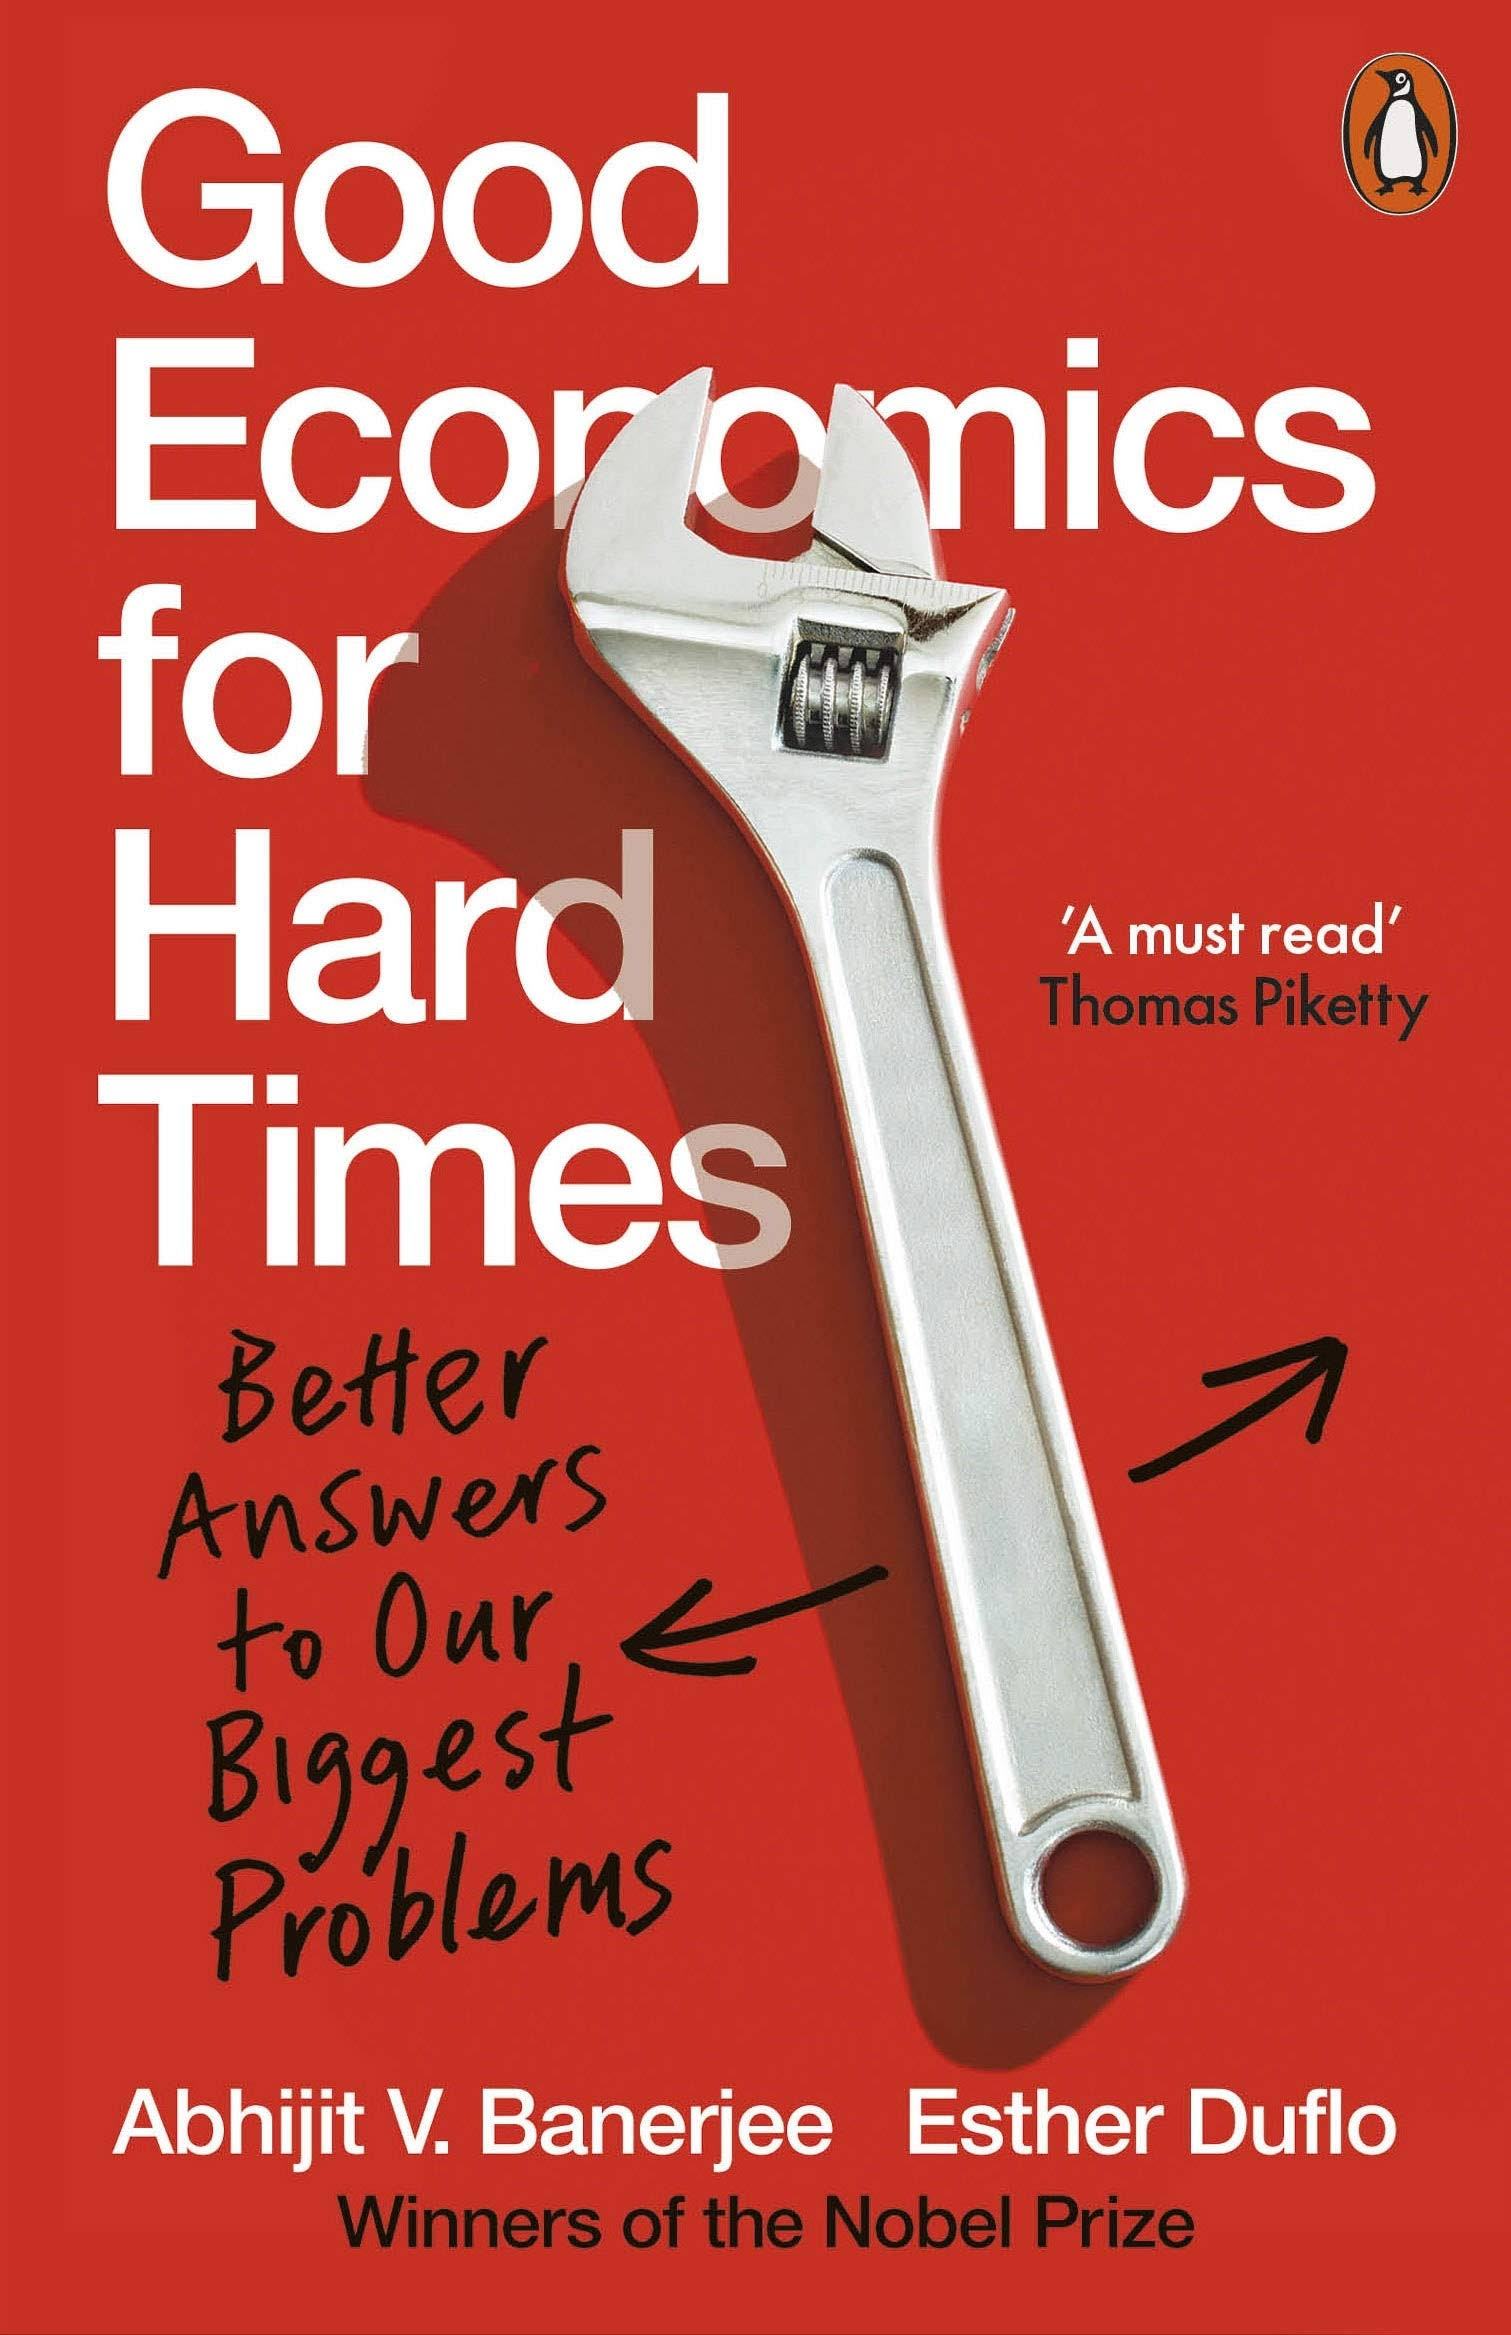 Good Economics for Hard Times by Abhijit V. Banerjee